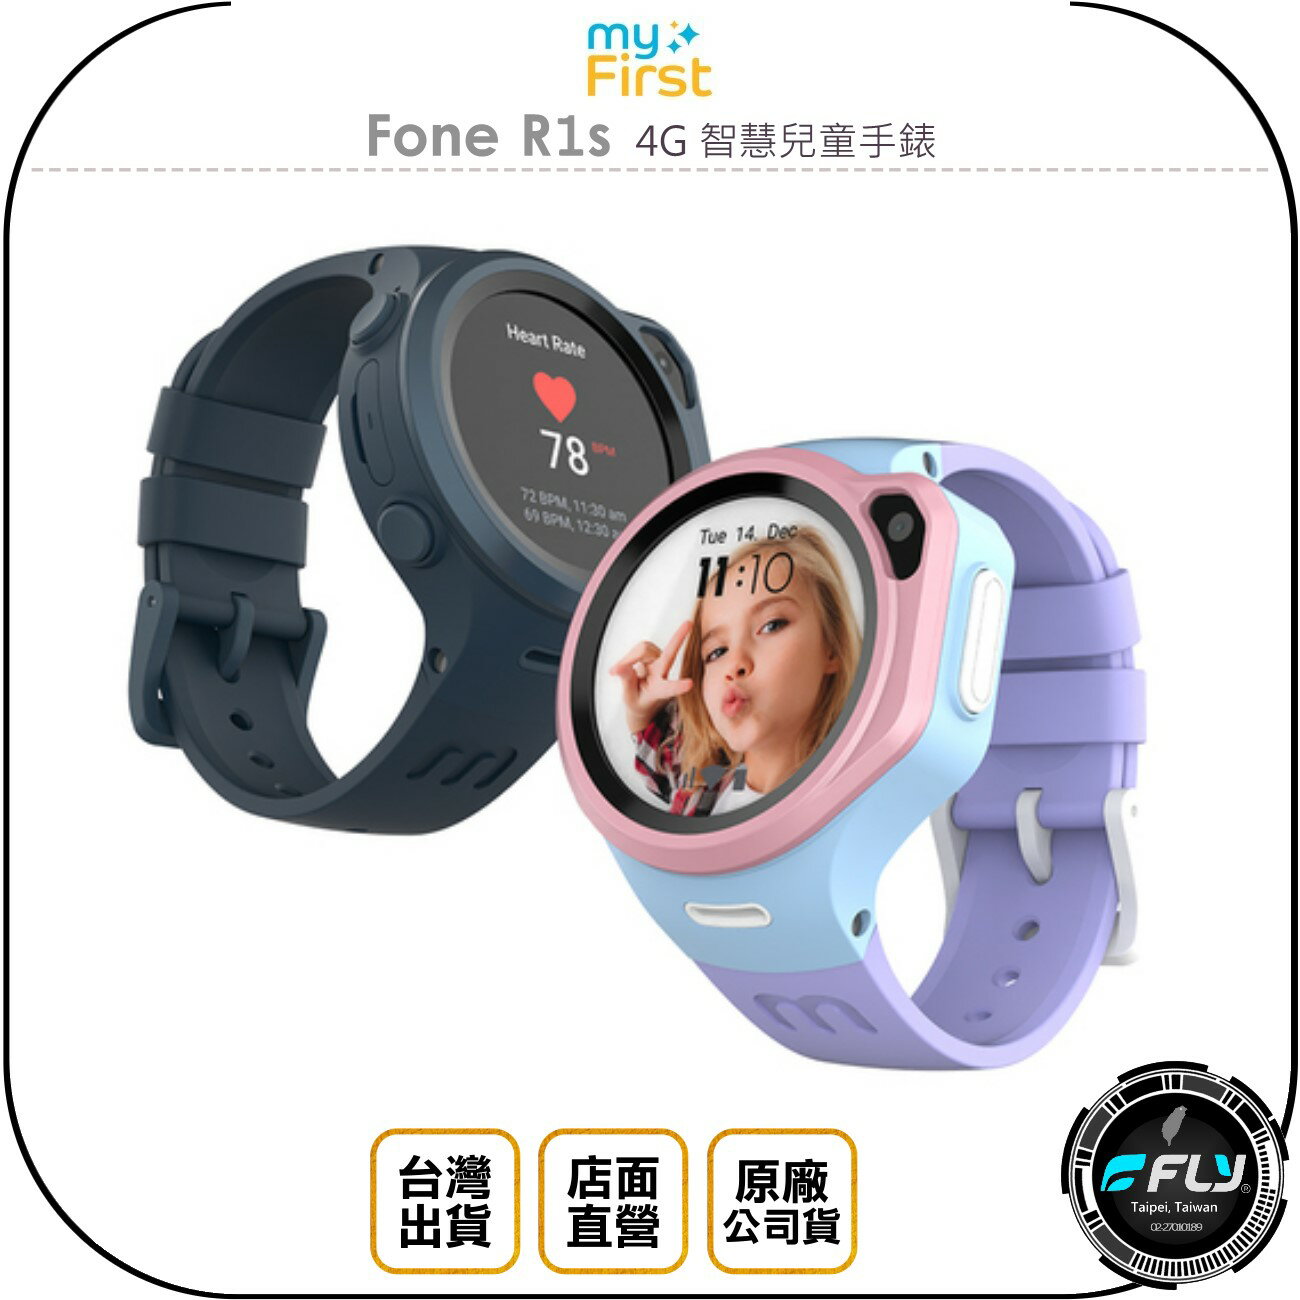 《飛翔無線3C》myFirst Fone R1s 4G 智慧兒童手錶◉公司貨◉即時通話◉精確定位◉一鍵求救◉高清相機